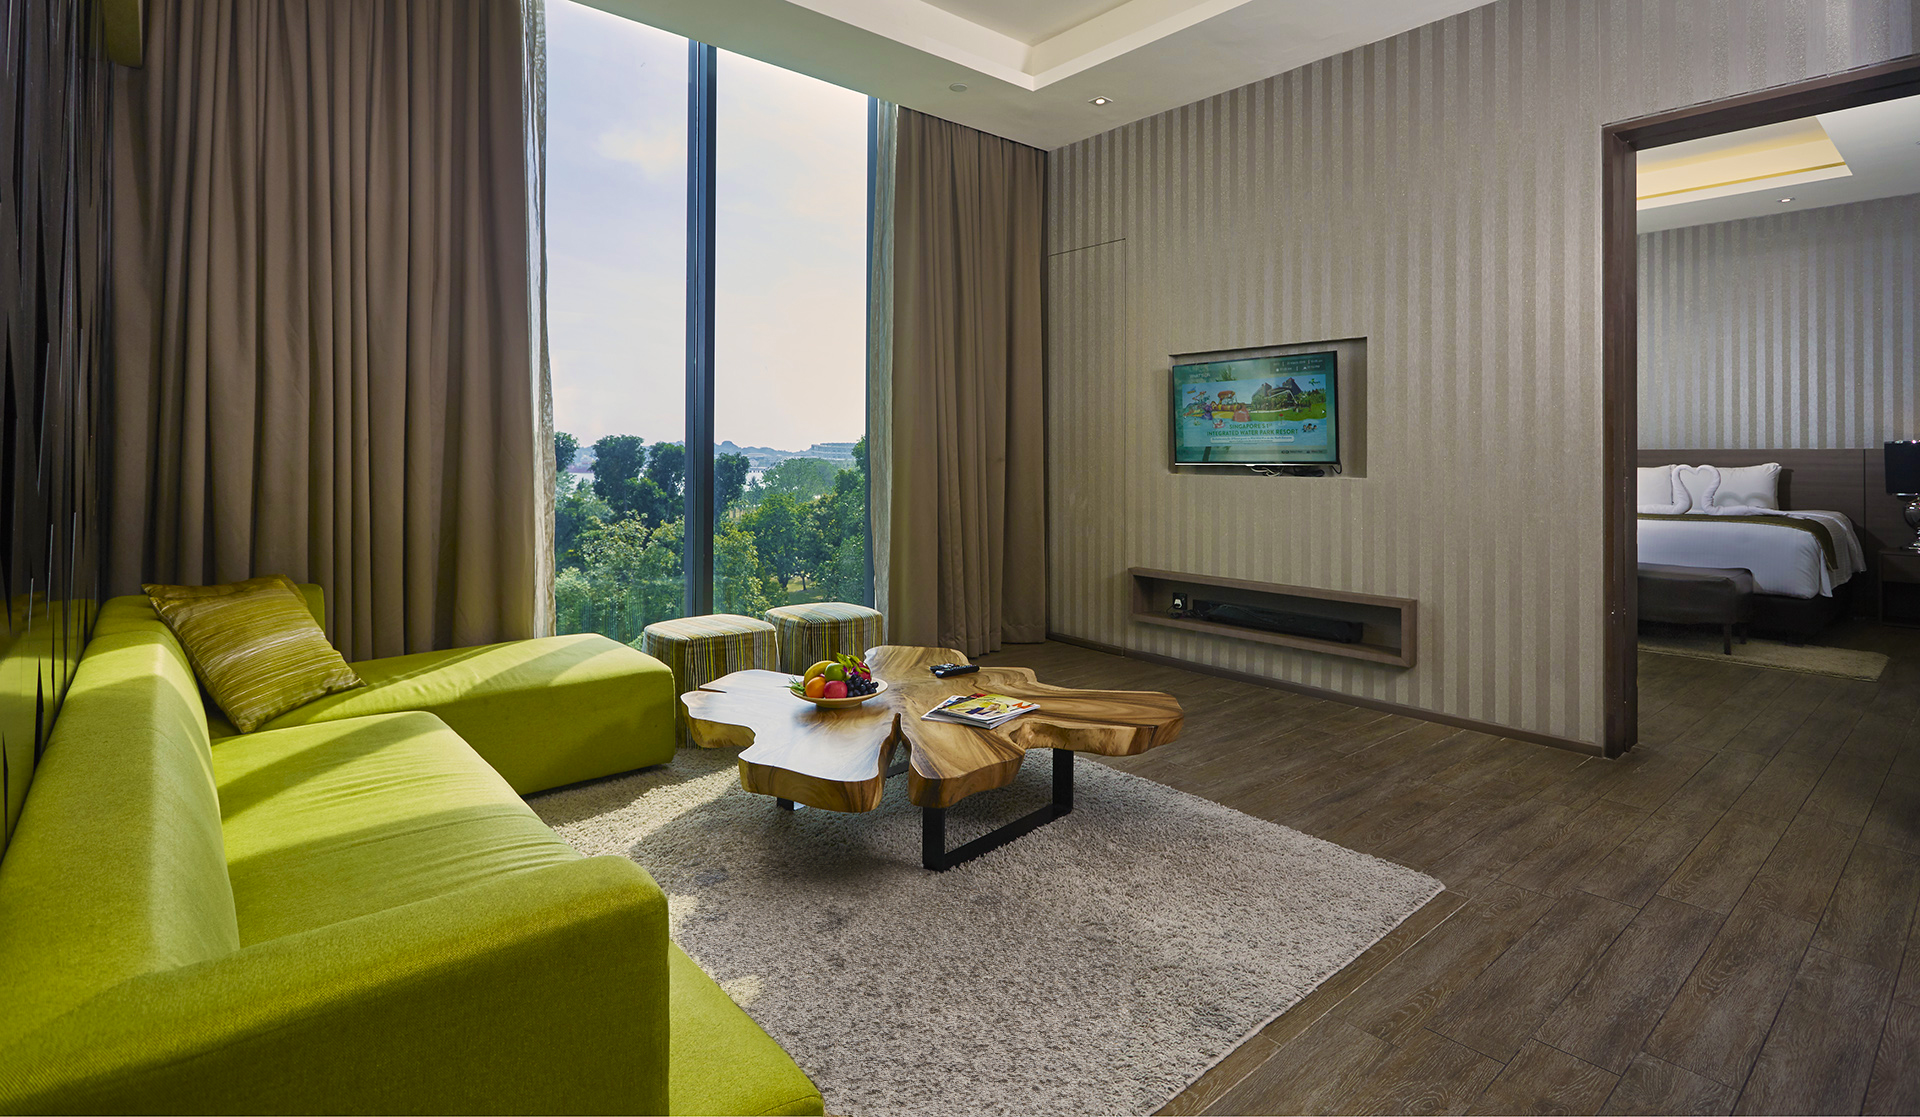 Rainforest Premier Suite - Rooms at D'Resort Singapore